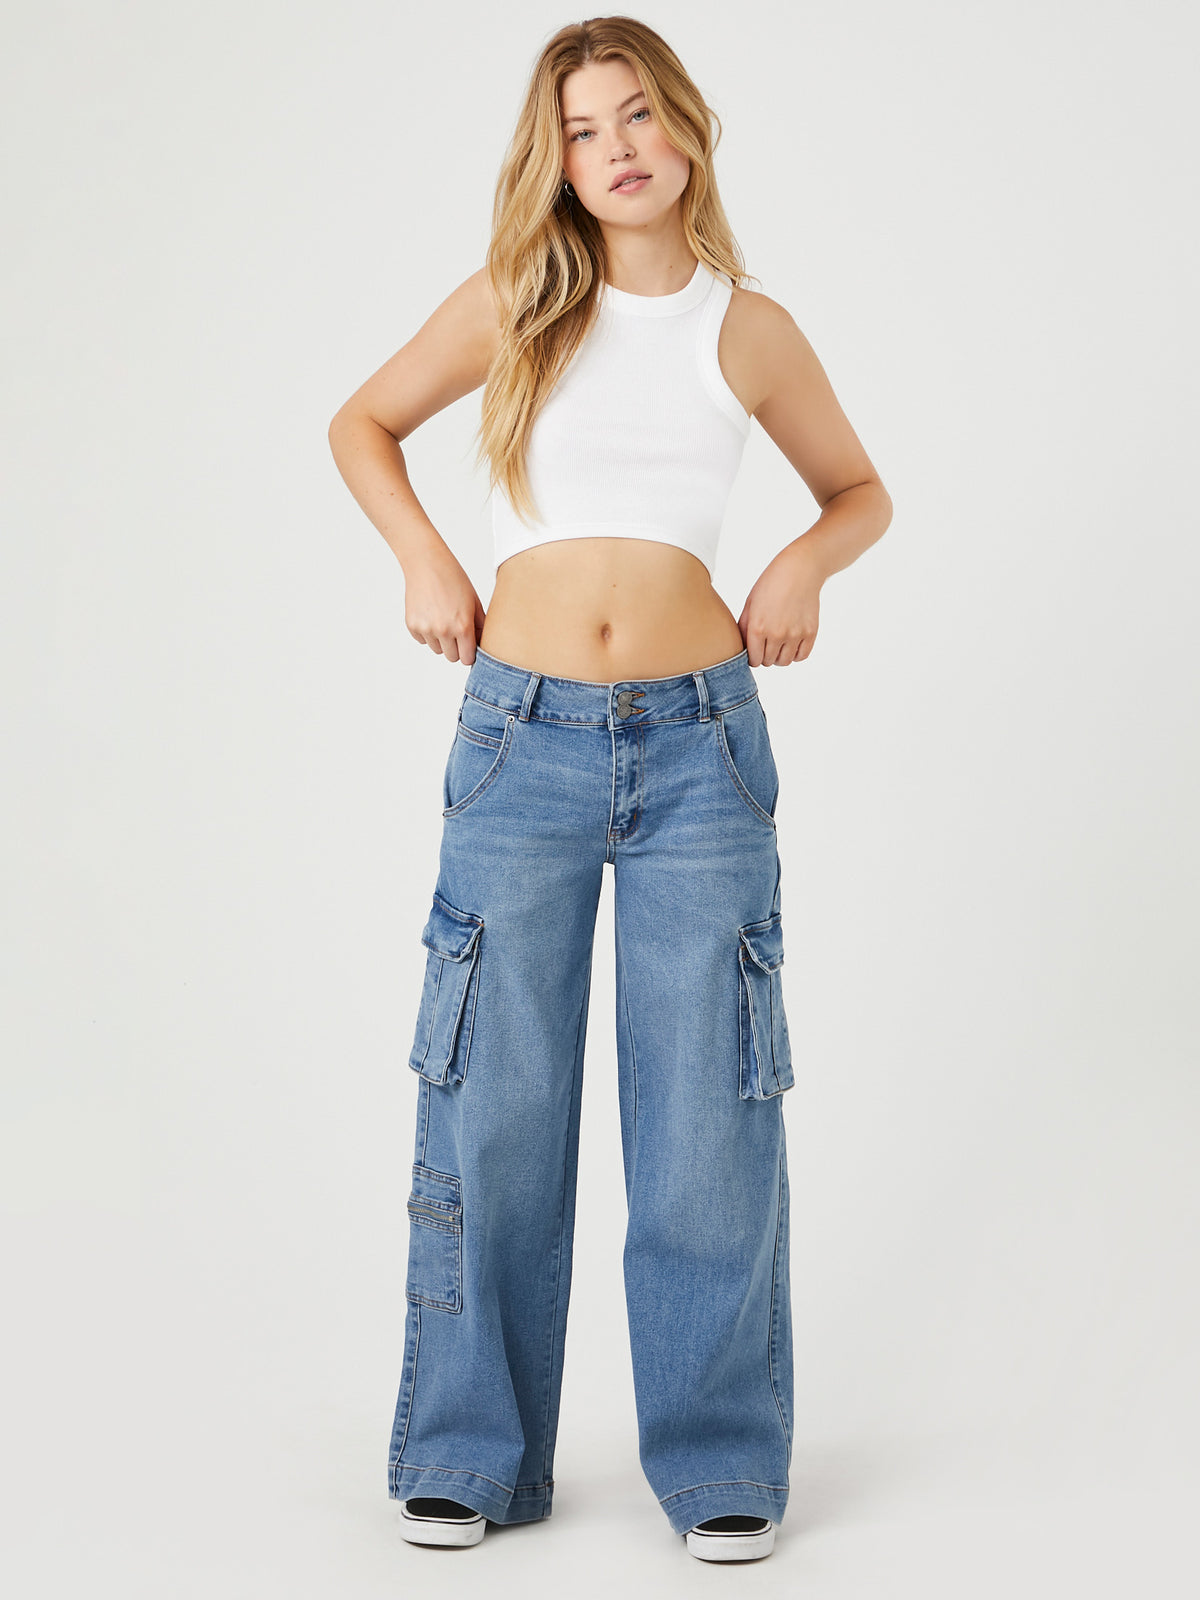 ג'ינס דגמ"ח בגזרה נמוכה